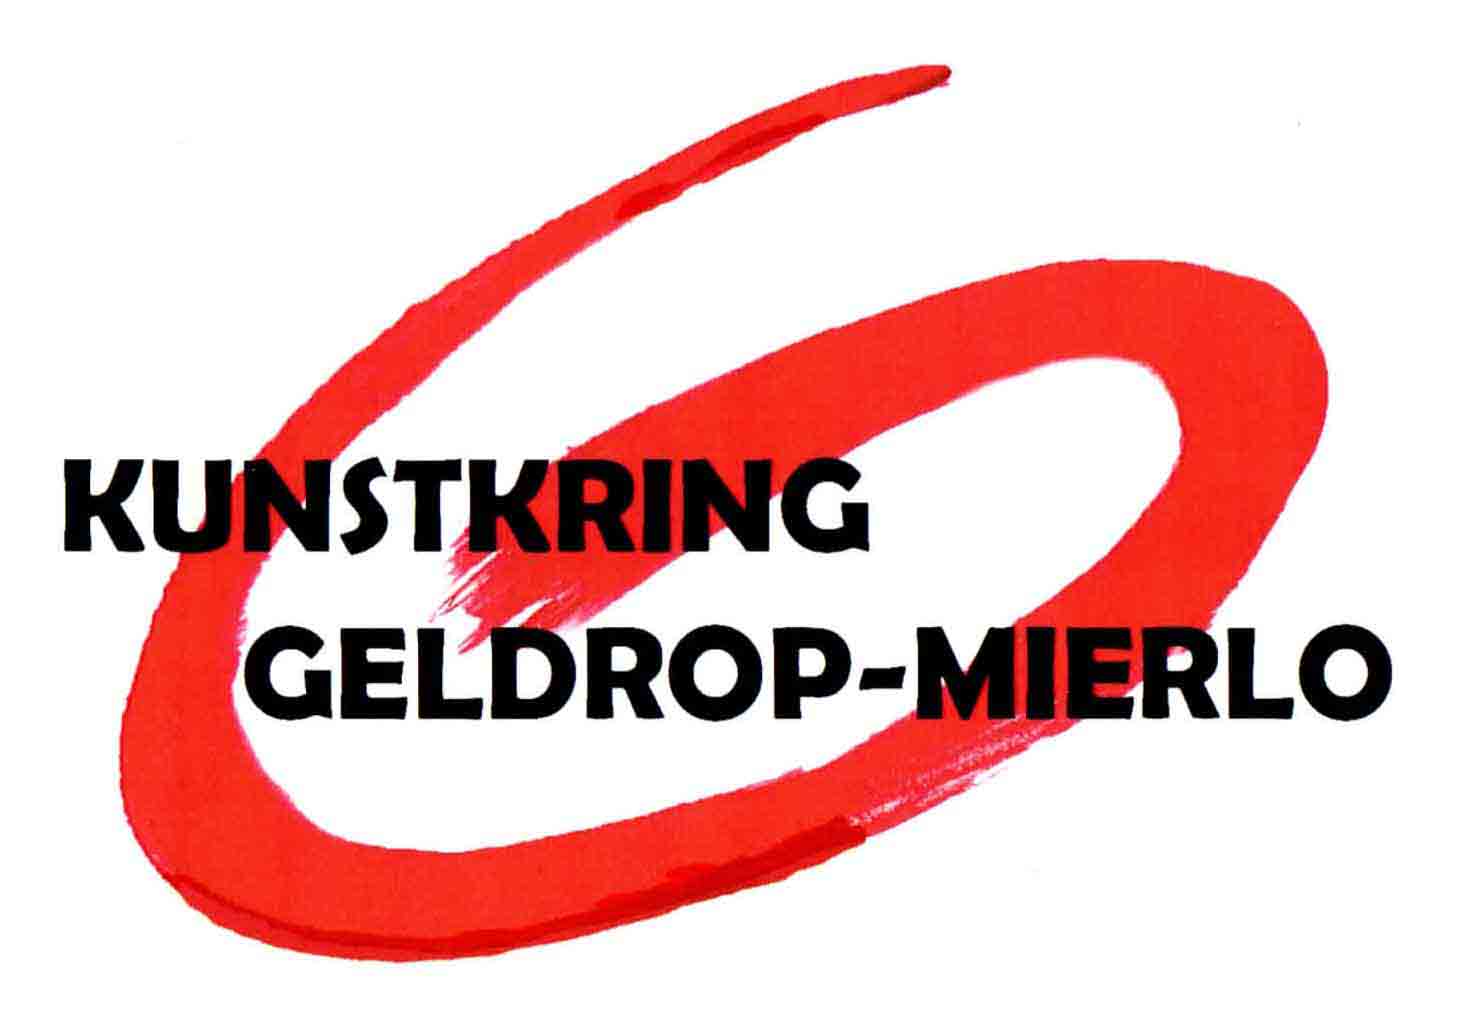 Kunstkring Geldrop-Mierlo